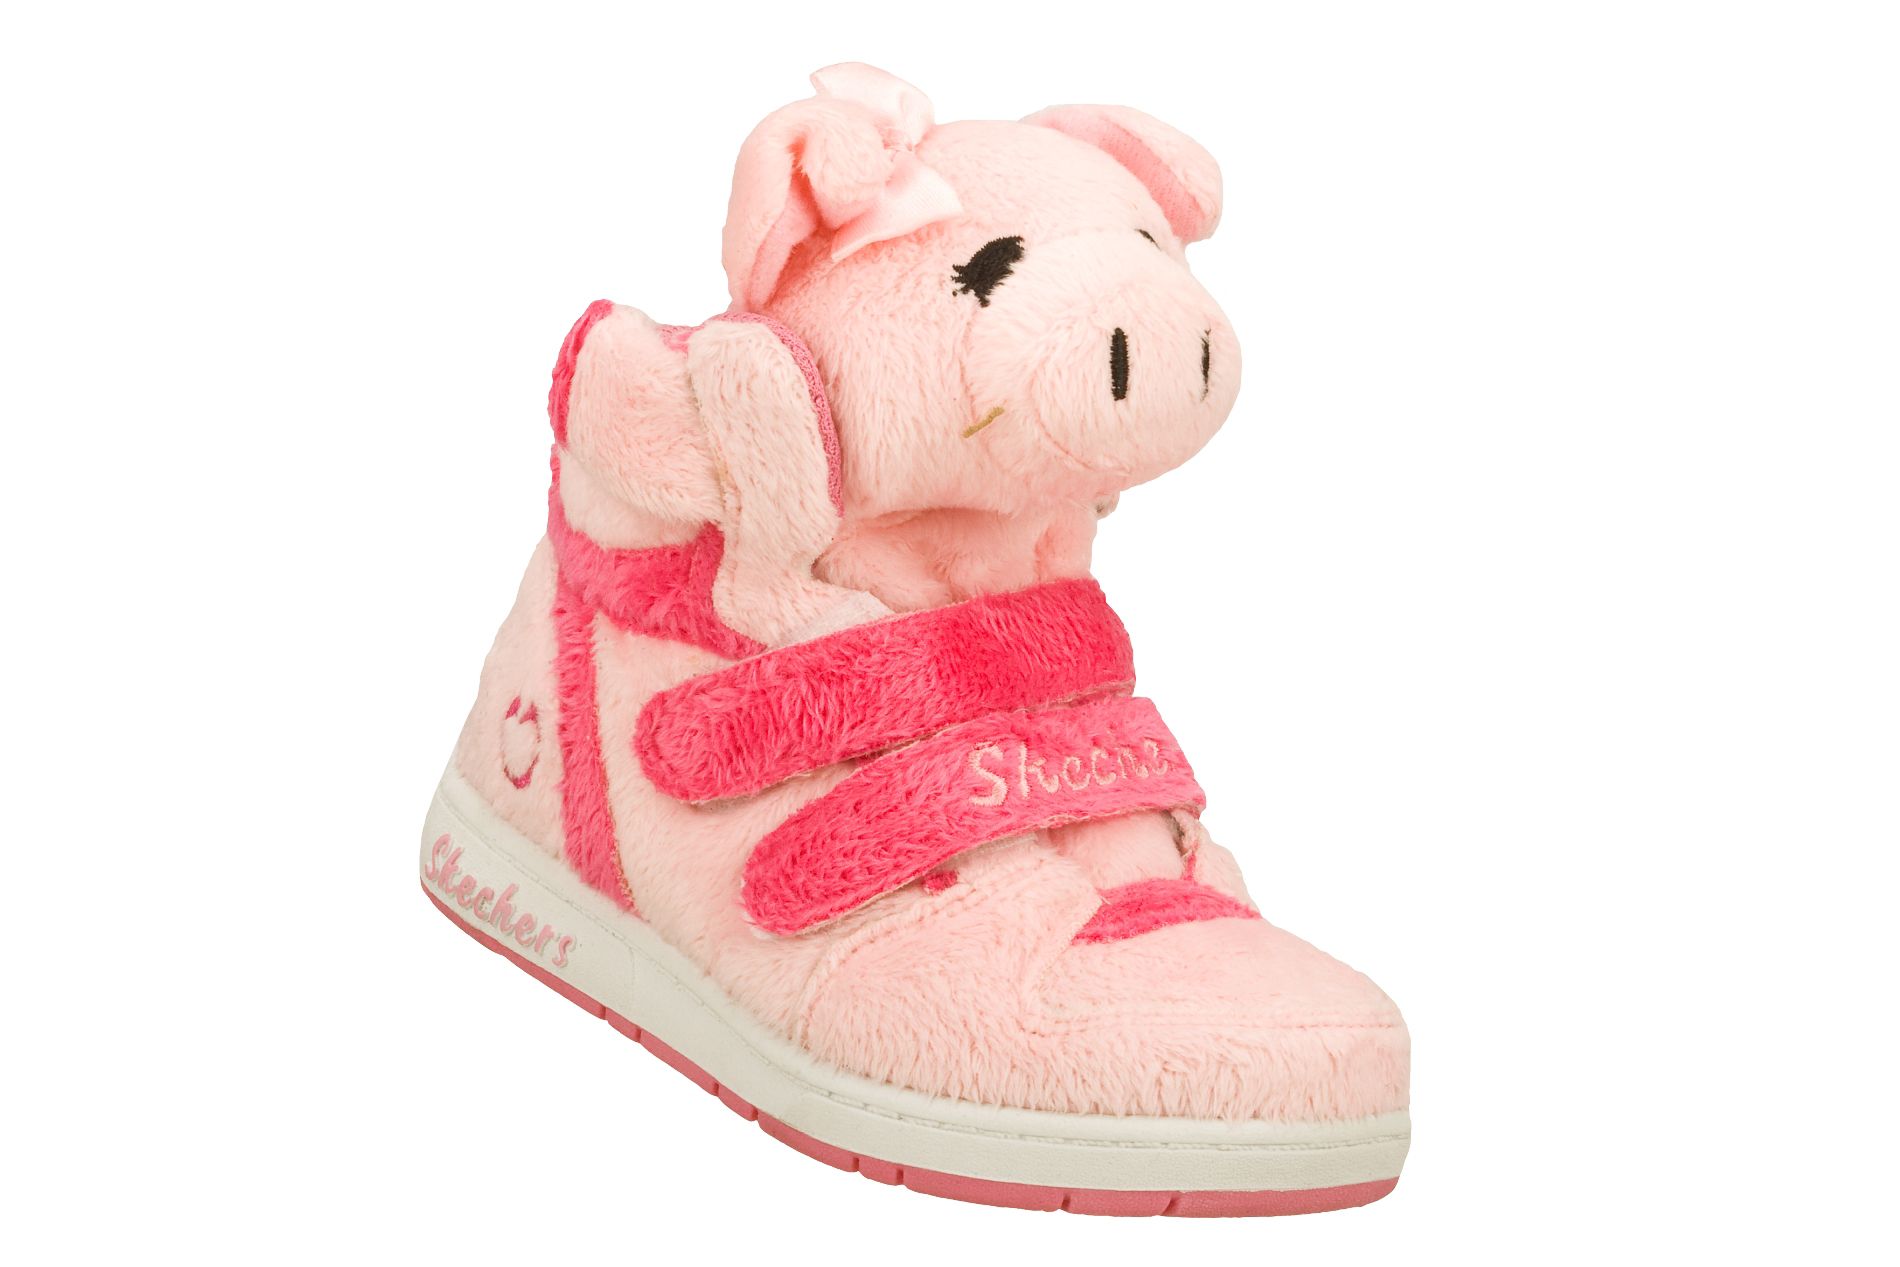 Skechers Toddler Girl's Sugar Pets Plush Animal Hightop Athletic Shoe - Pink